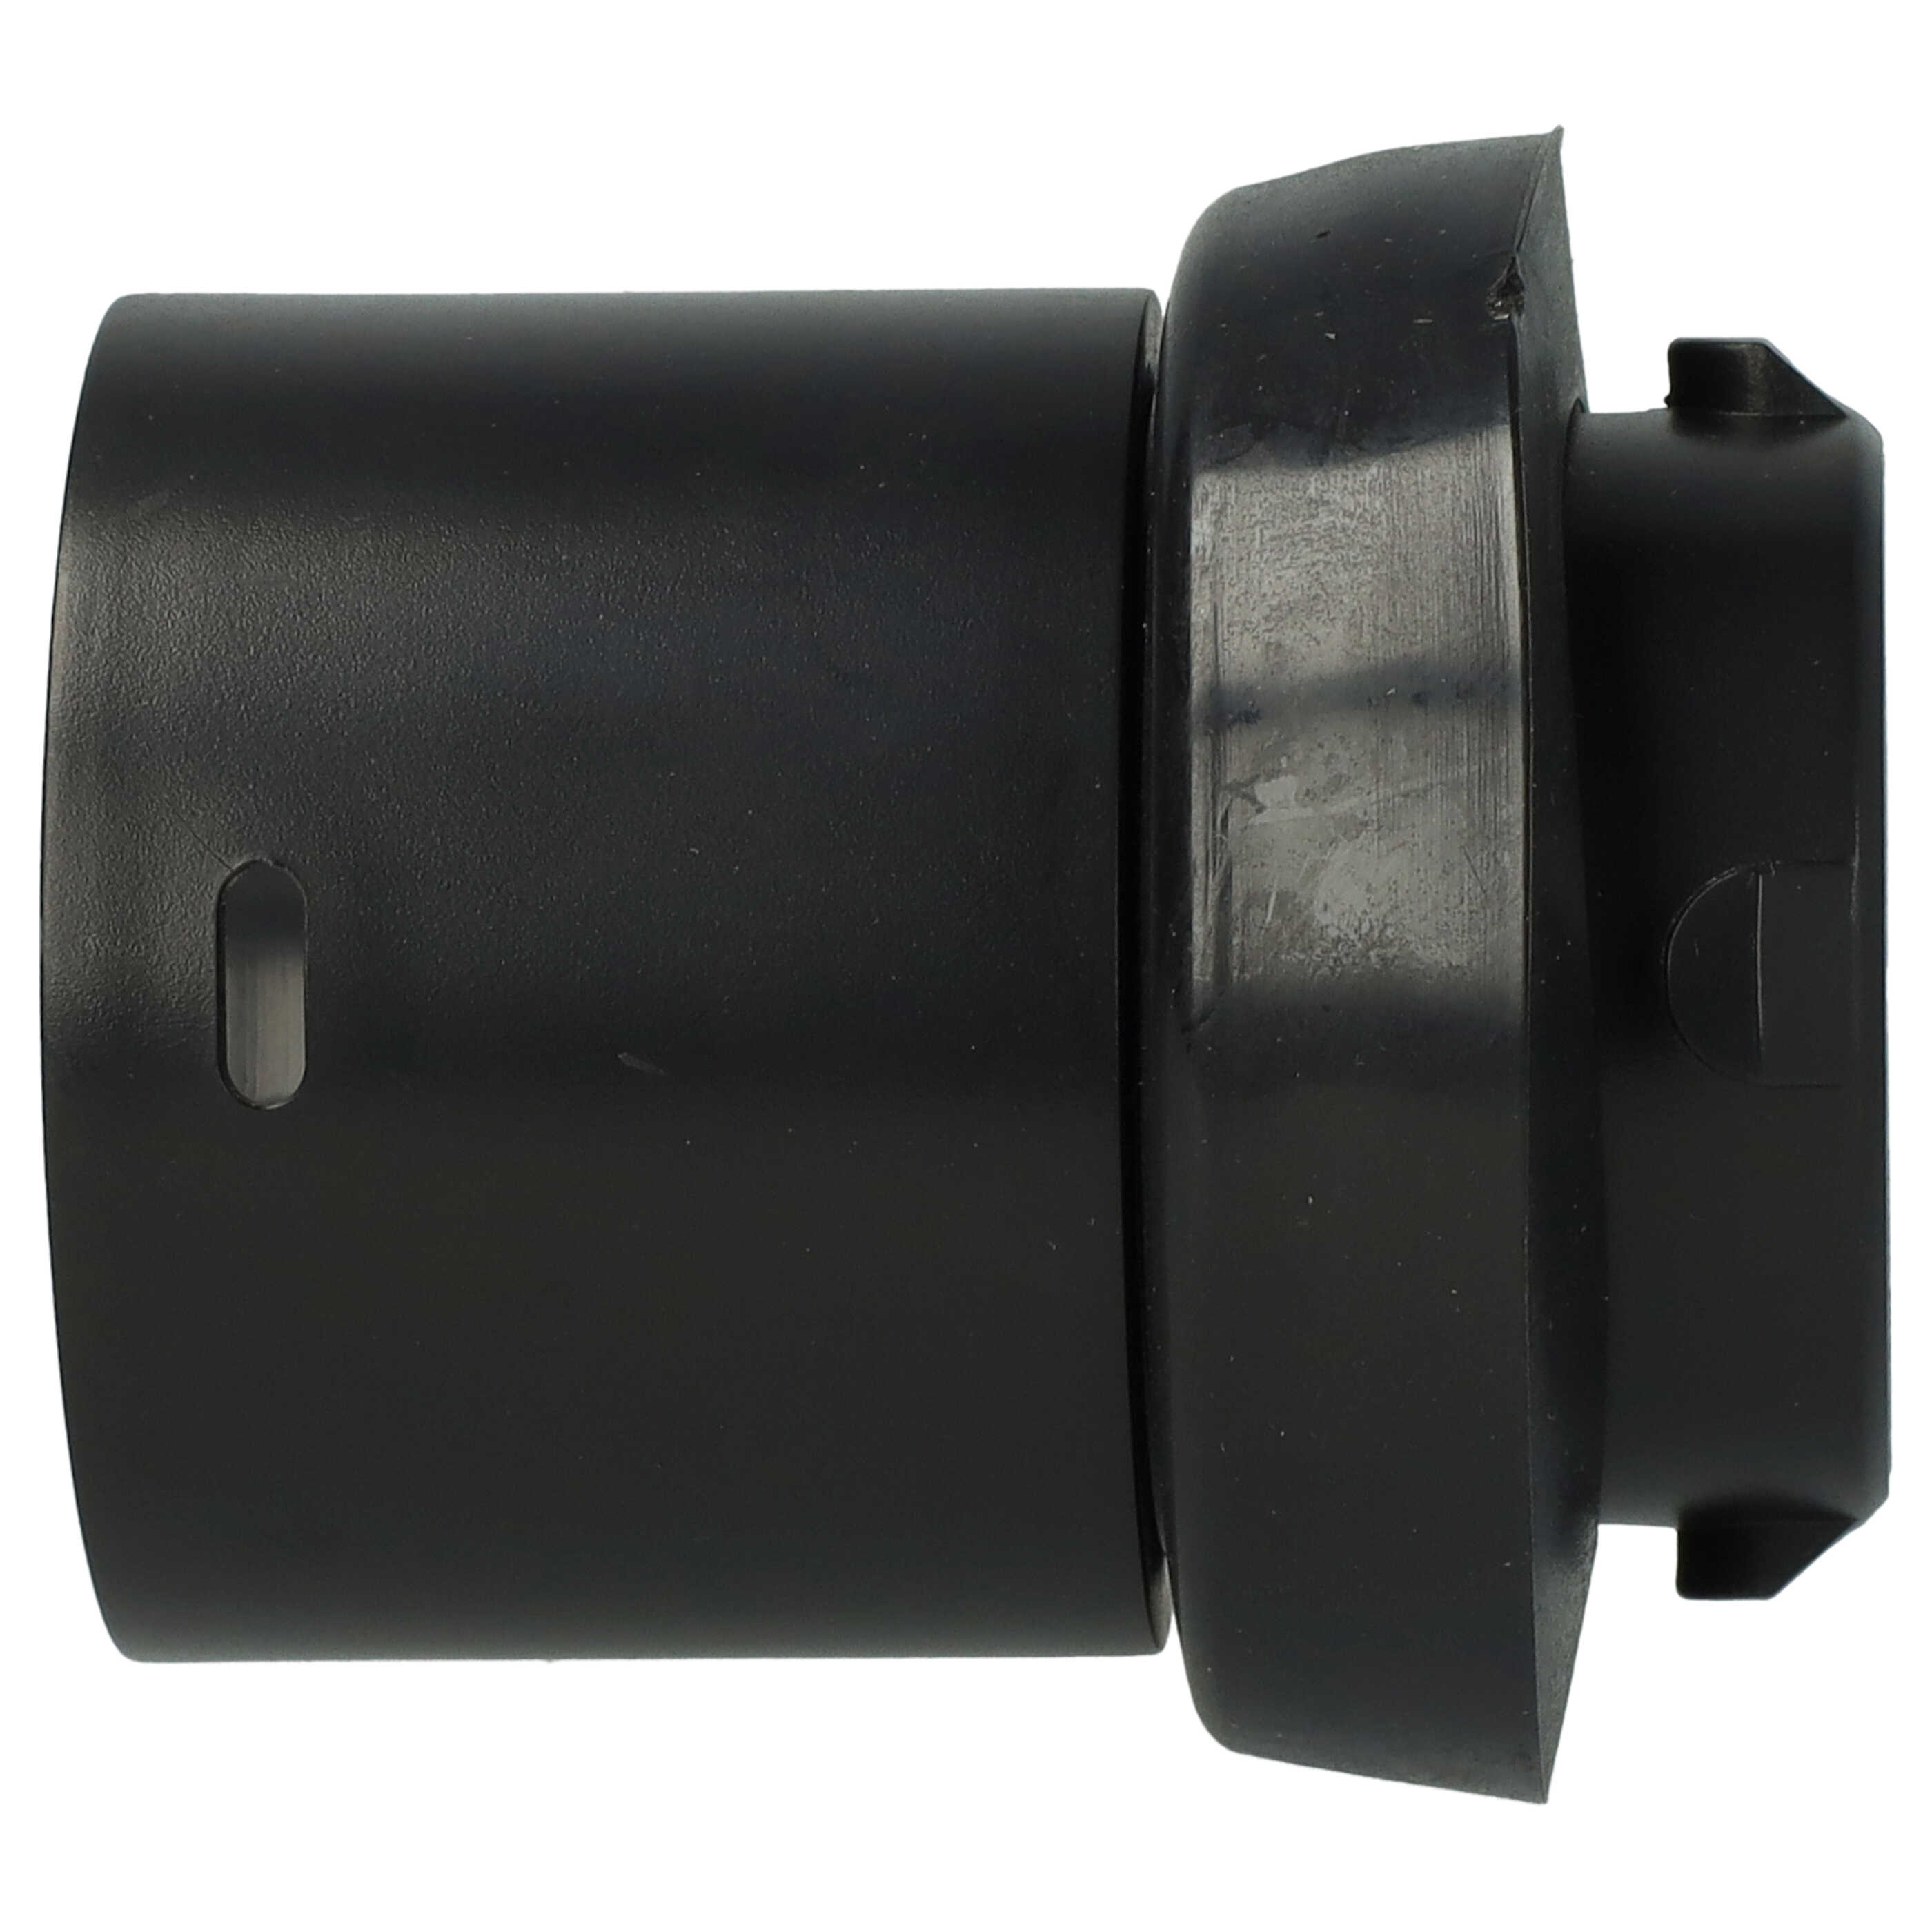 Adaptateur de tuyau pour aspirateur Electrolux / Nilfisk D 711 et autres - 32 mm rond, à clic